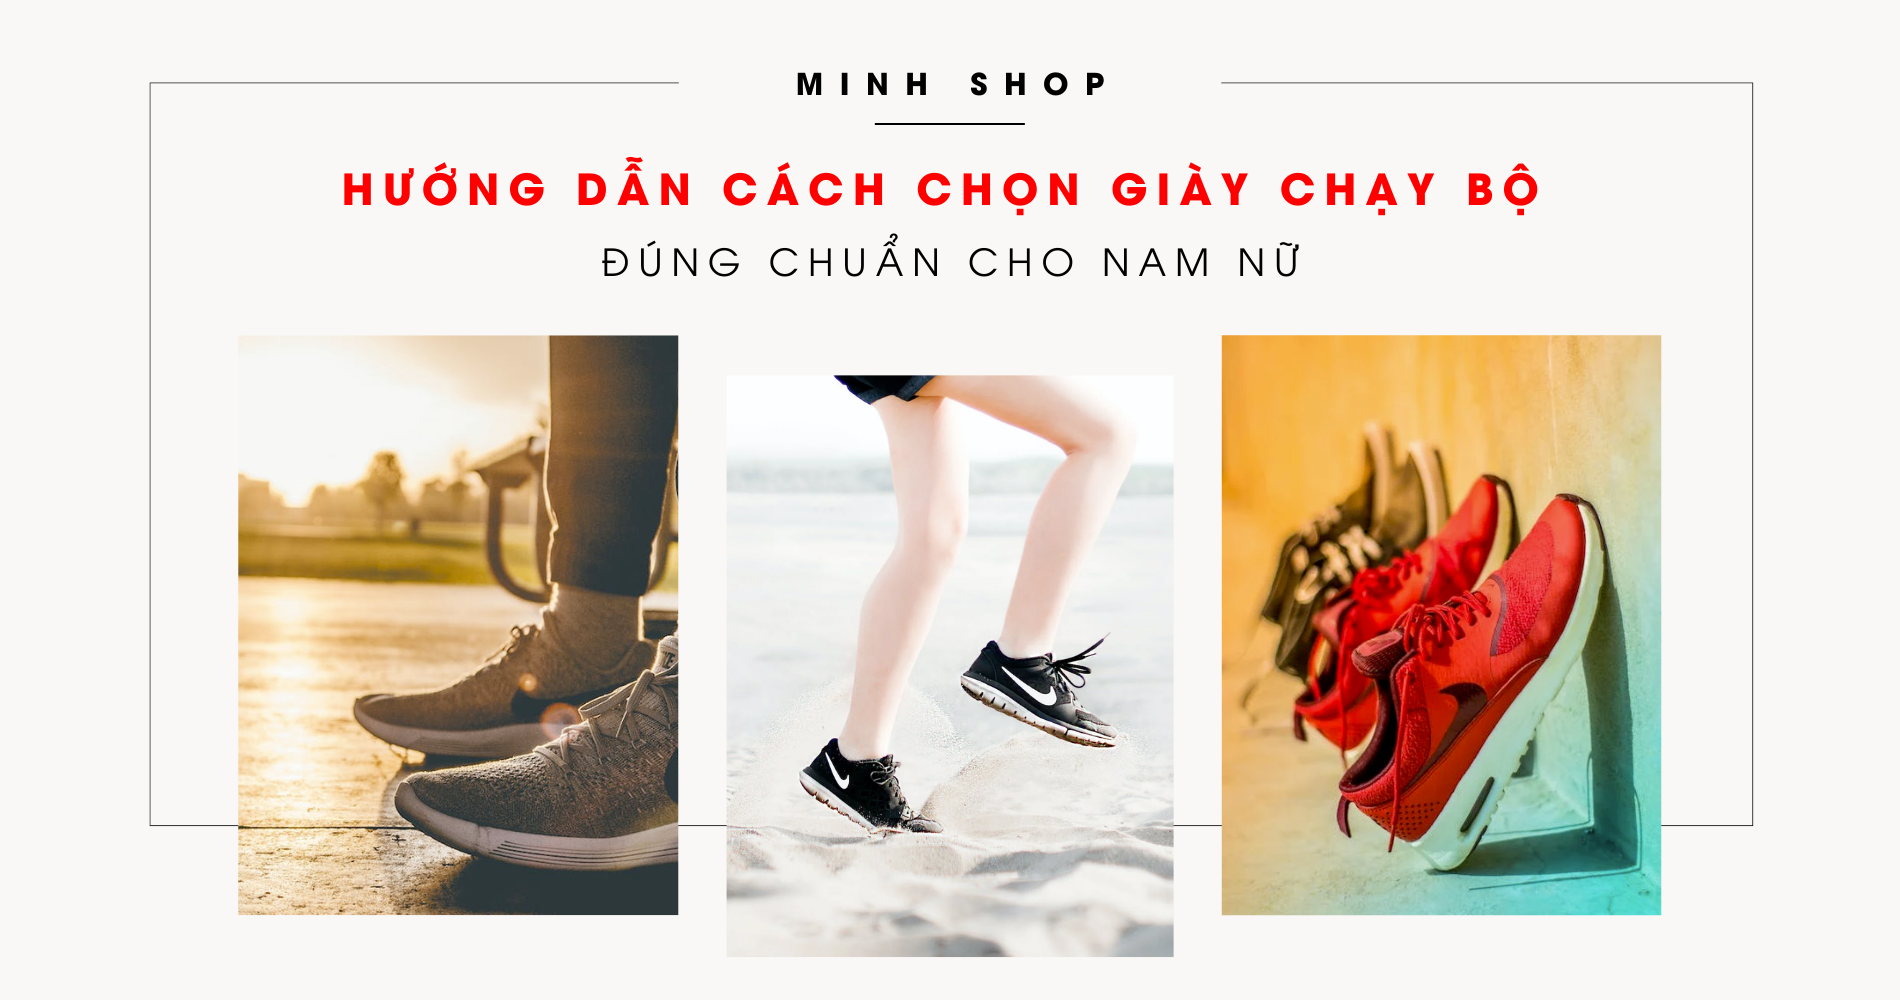 tips-huong-dan-cach-chon-giay-chay-bo-dung-chuan-cho-nam-nu